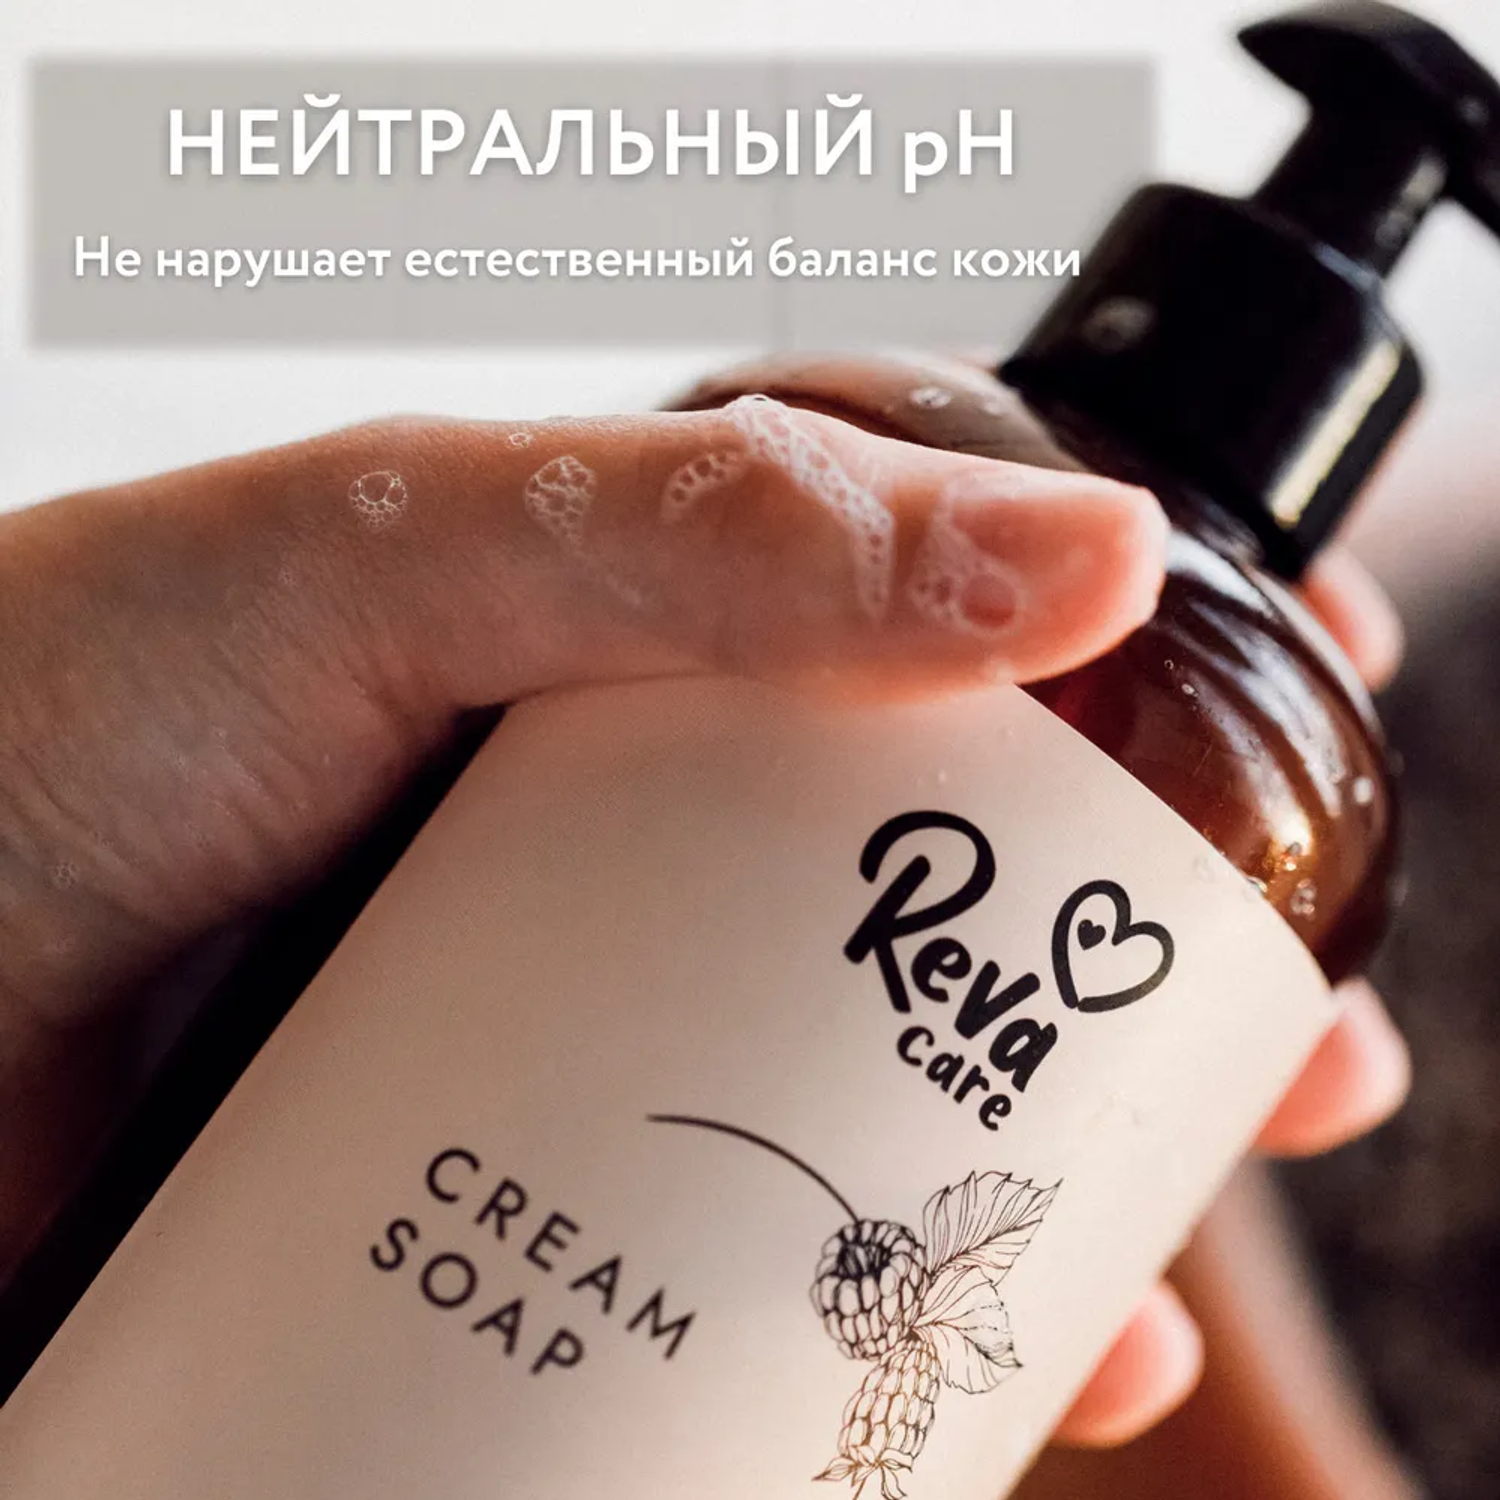 Жидкое мыло Reva Care для рук Cream Soap с ароматом ежевики набор 8 шт по 500 мл - фото 3